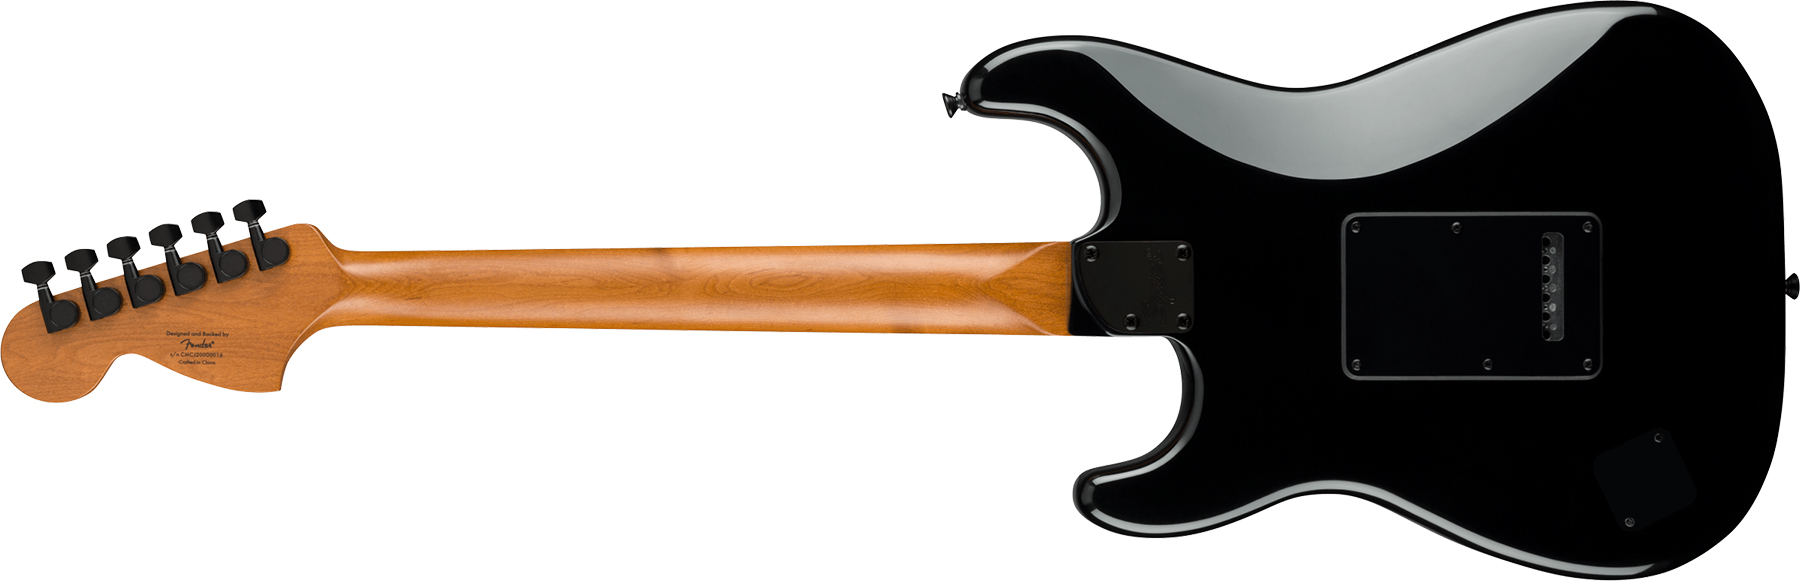 Squier Strat Contemporary Special Sss Trem Mn - Black - Guitarra eléctrica con forma de str. - Variation 1